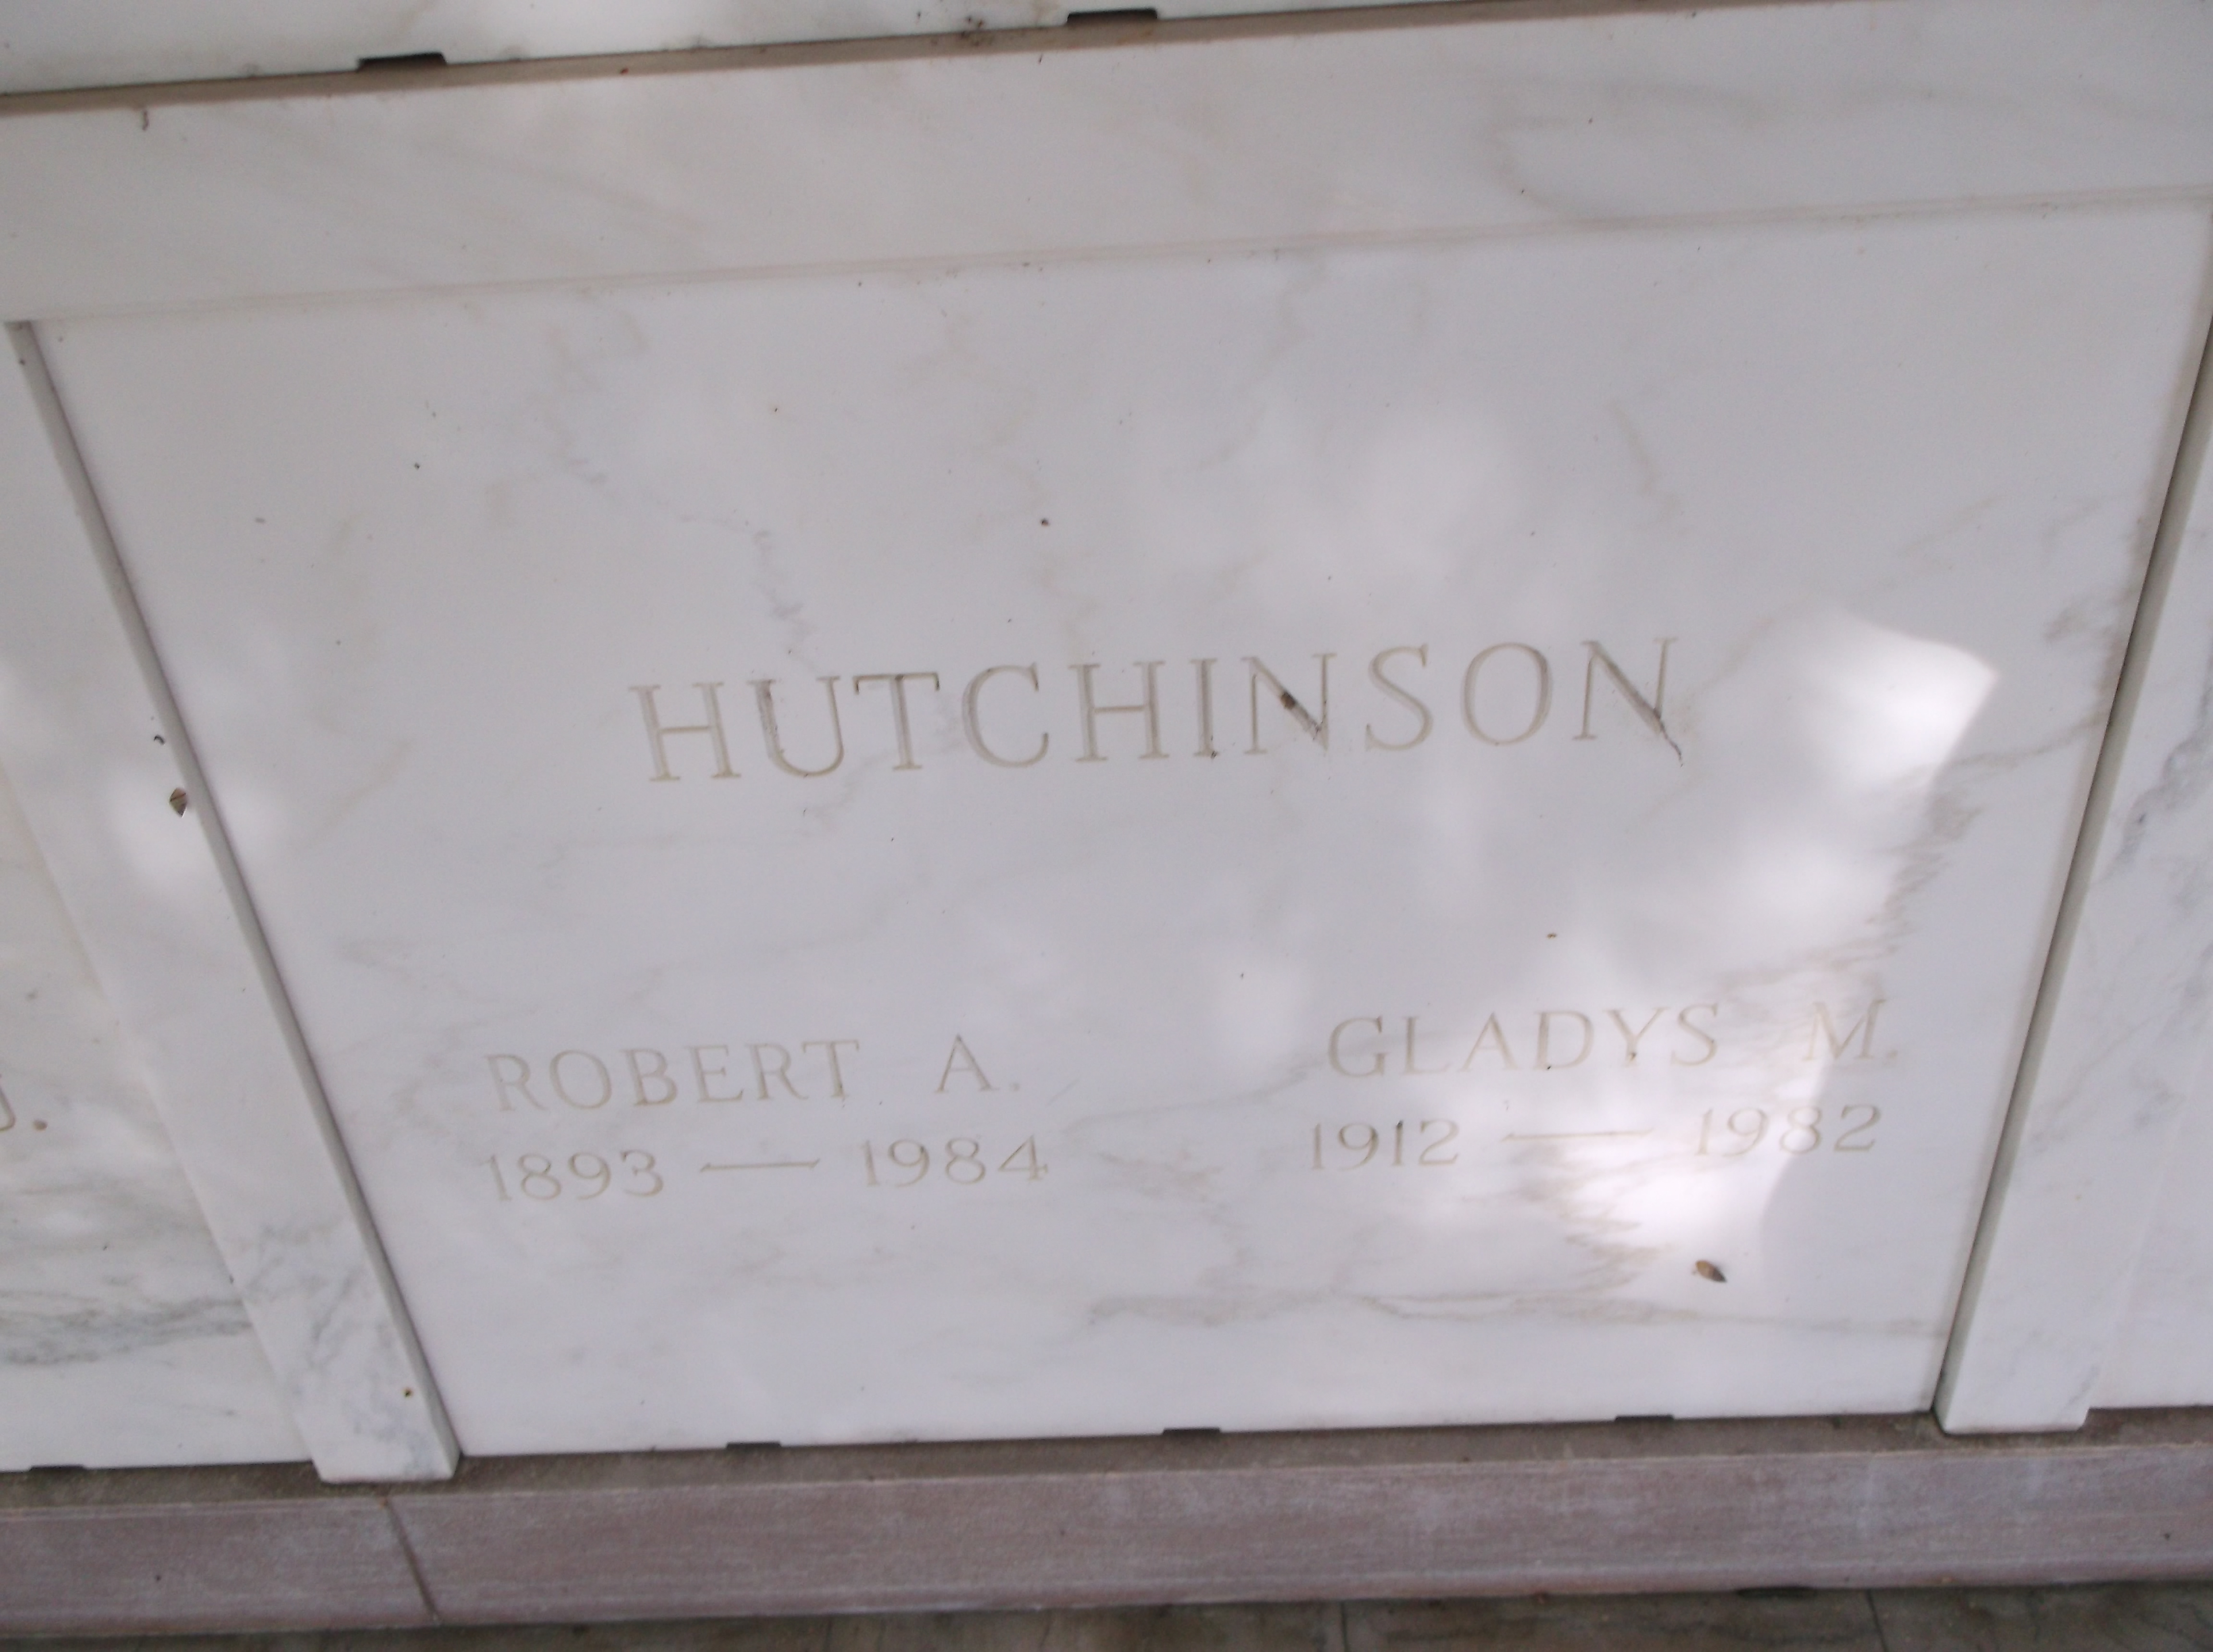 Gladys M Hutchinson